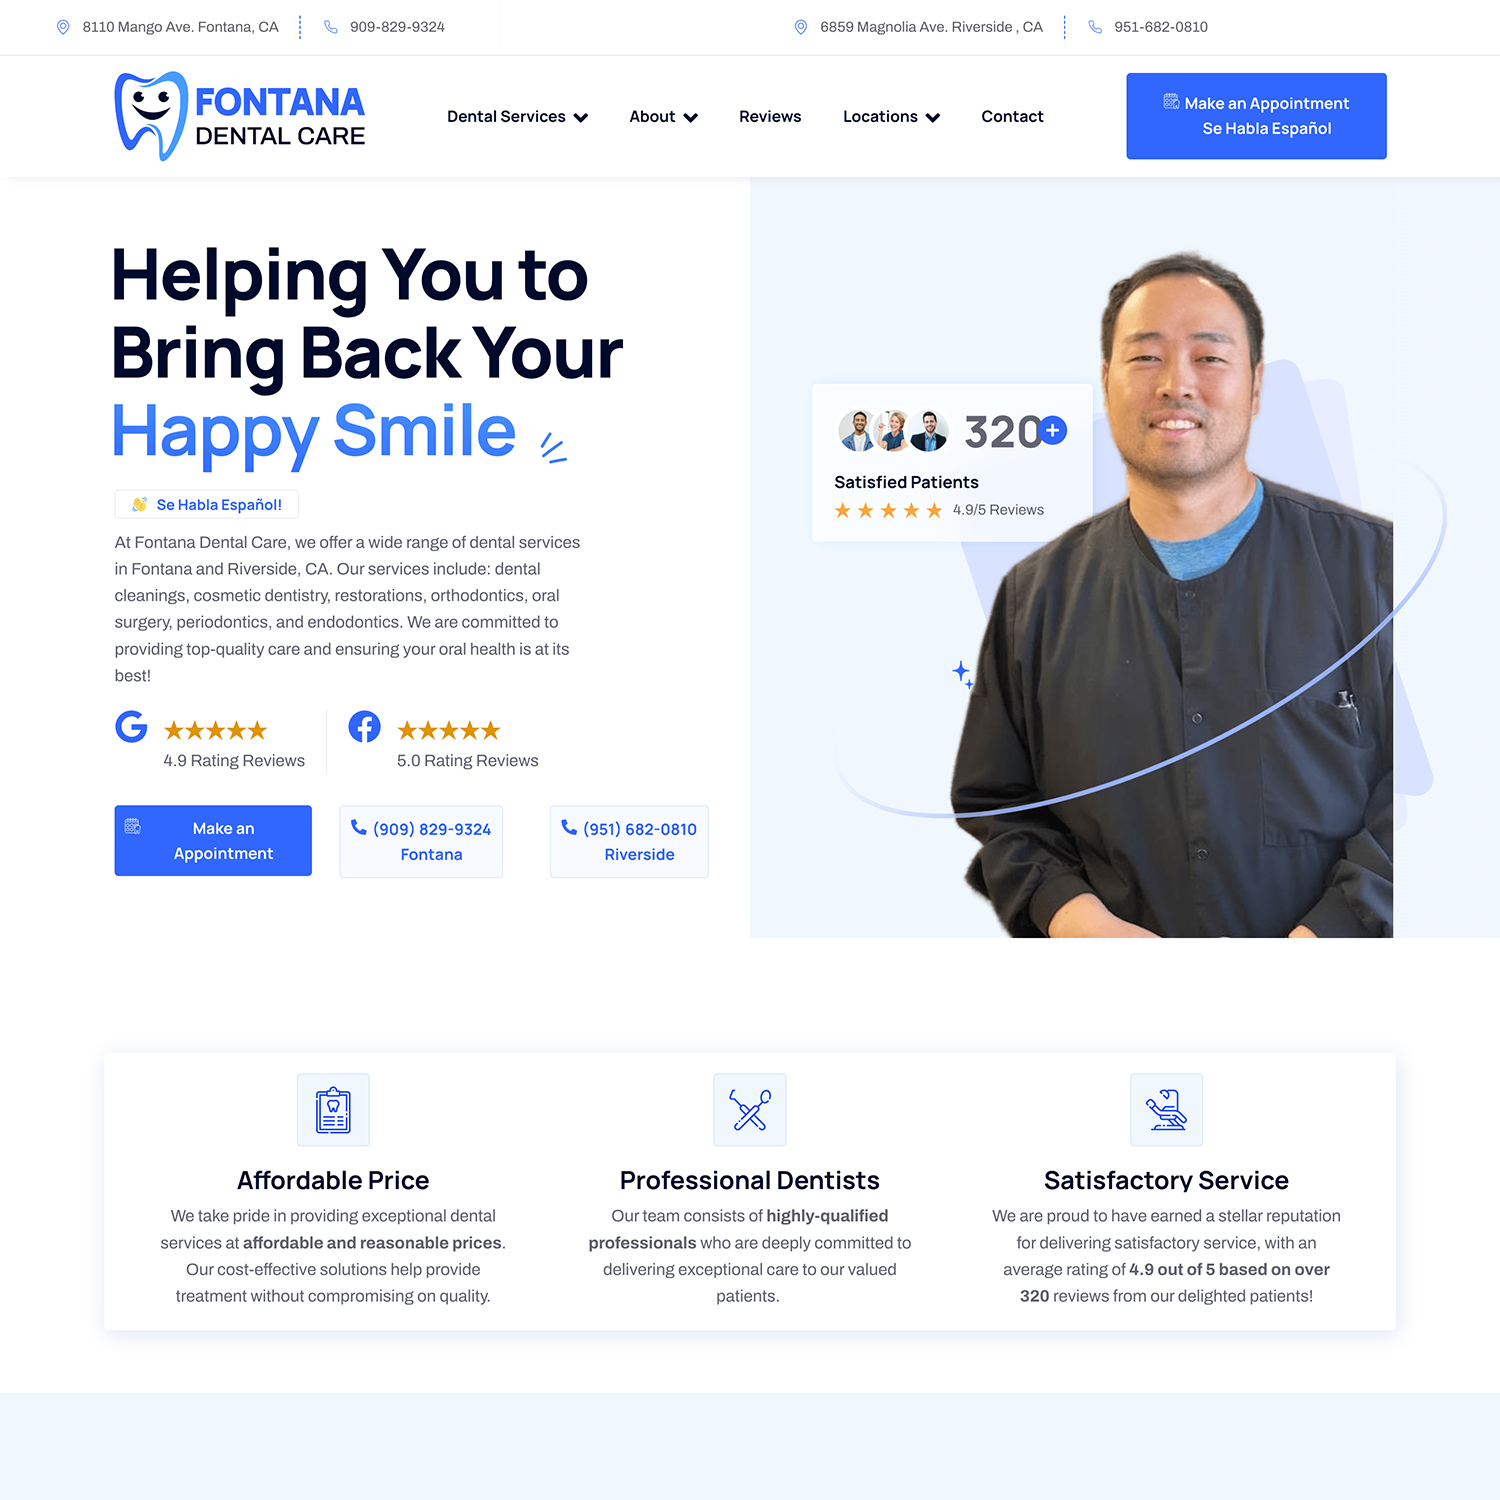 fontana dental care website